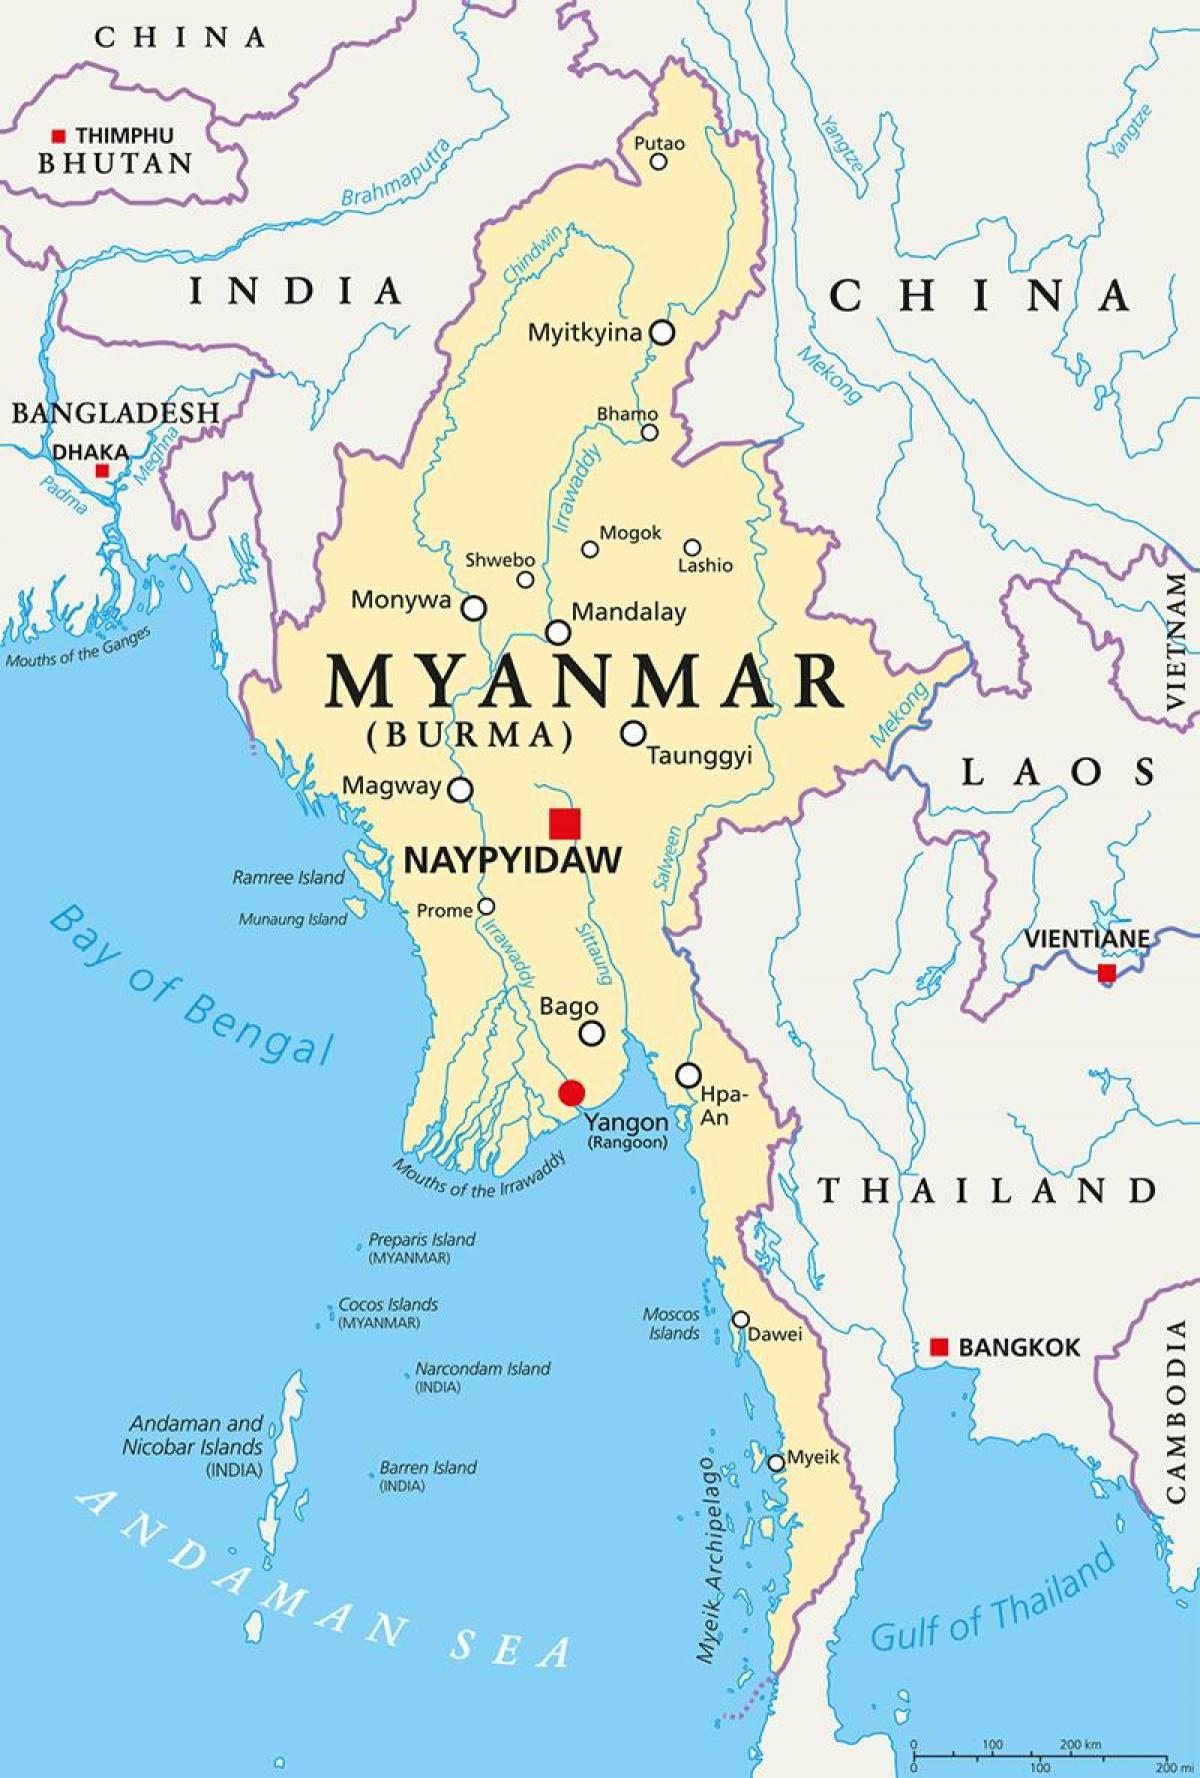 Държава Мианмар картата